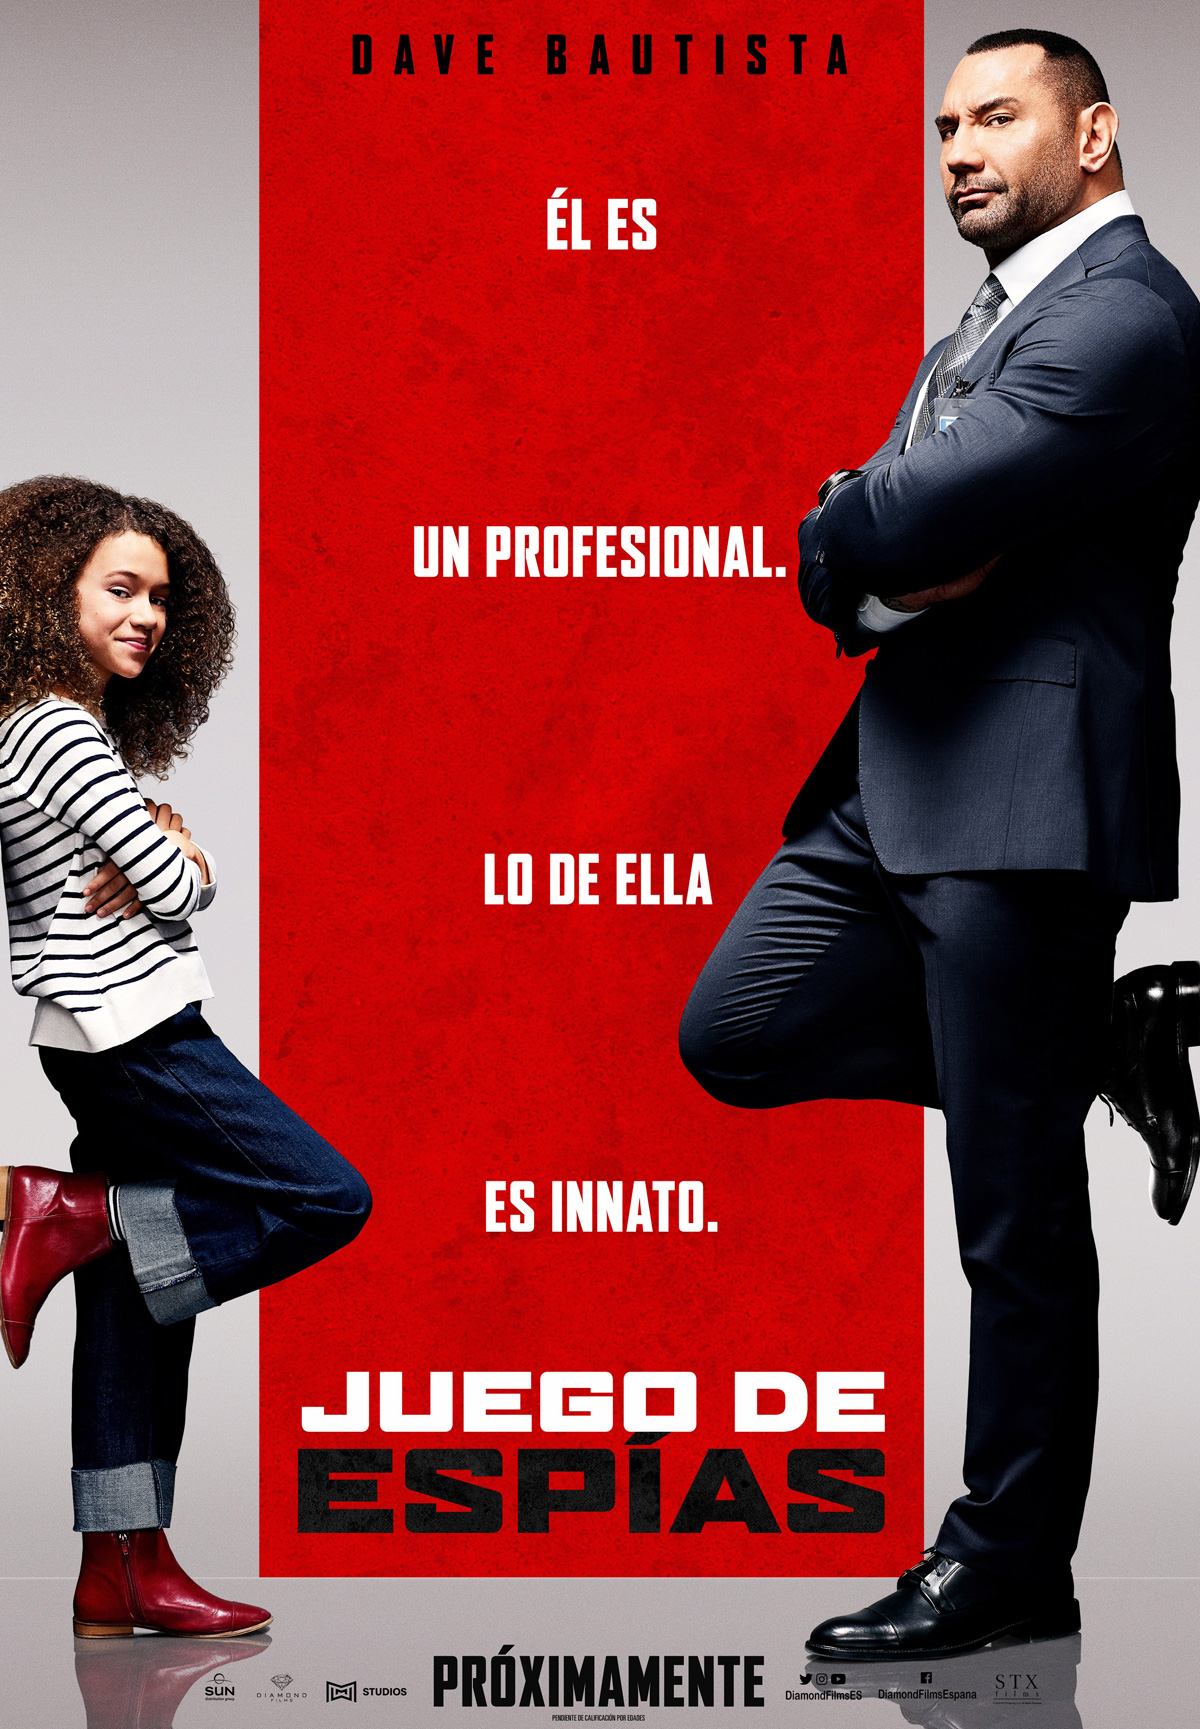 Hasil gambar untuk Juego de espÃ­as espana movie